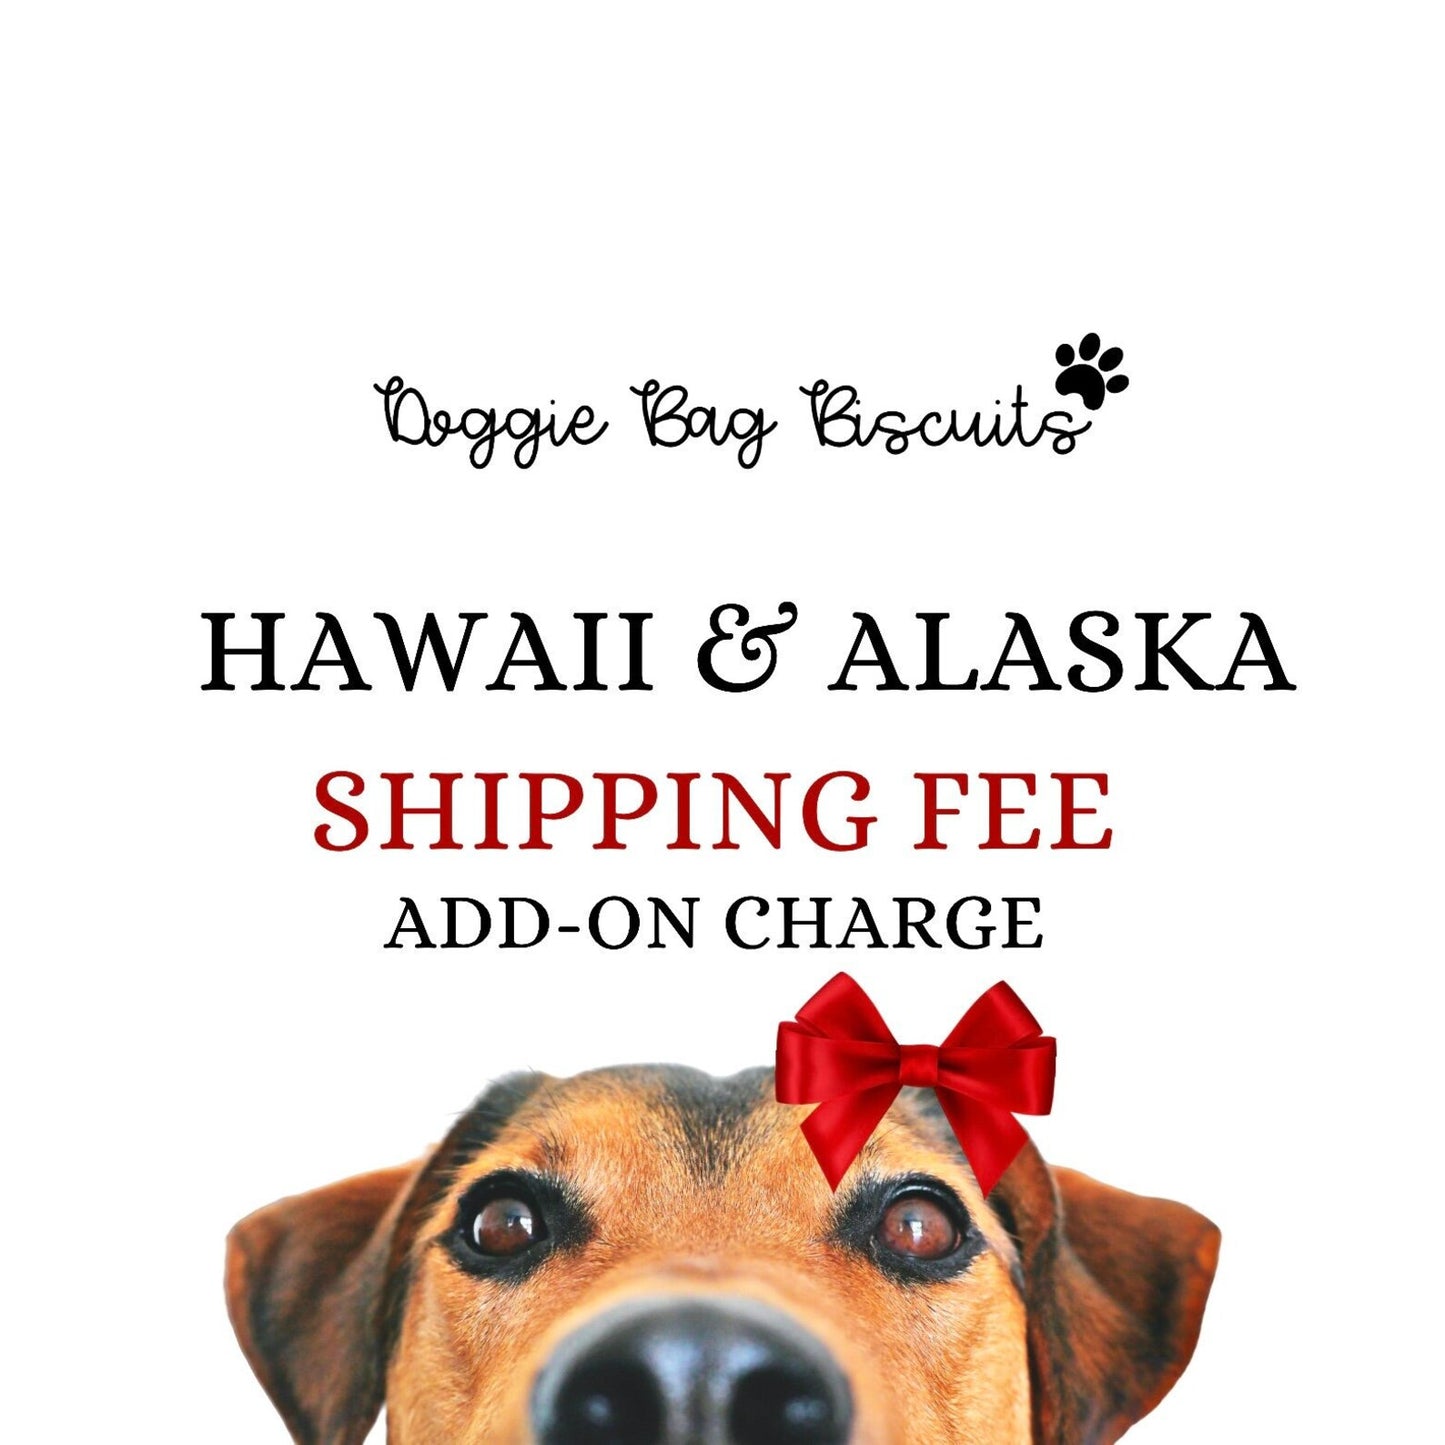 Hawaii & Alaska Shipping Fee Add-On